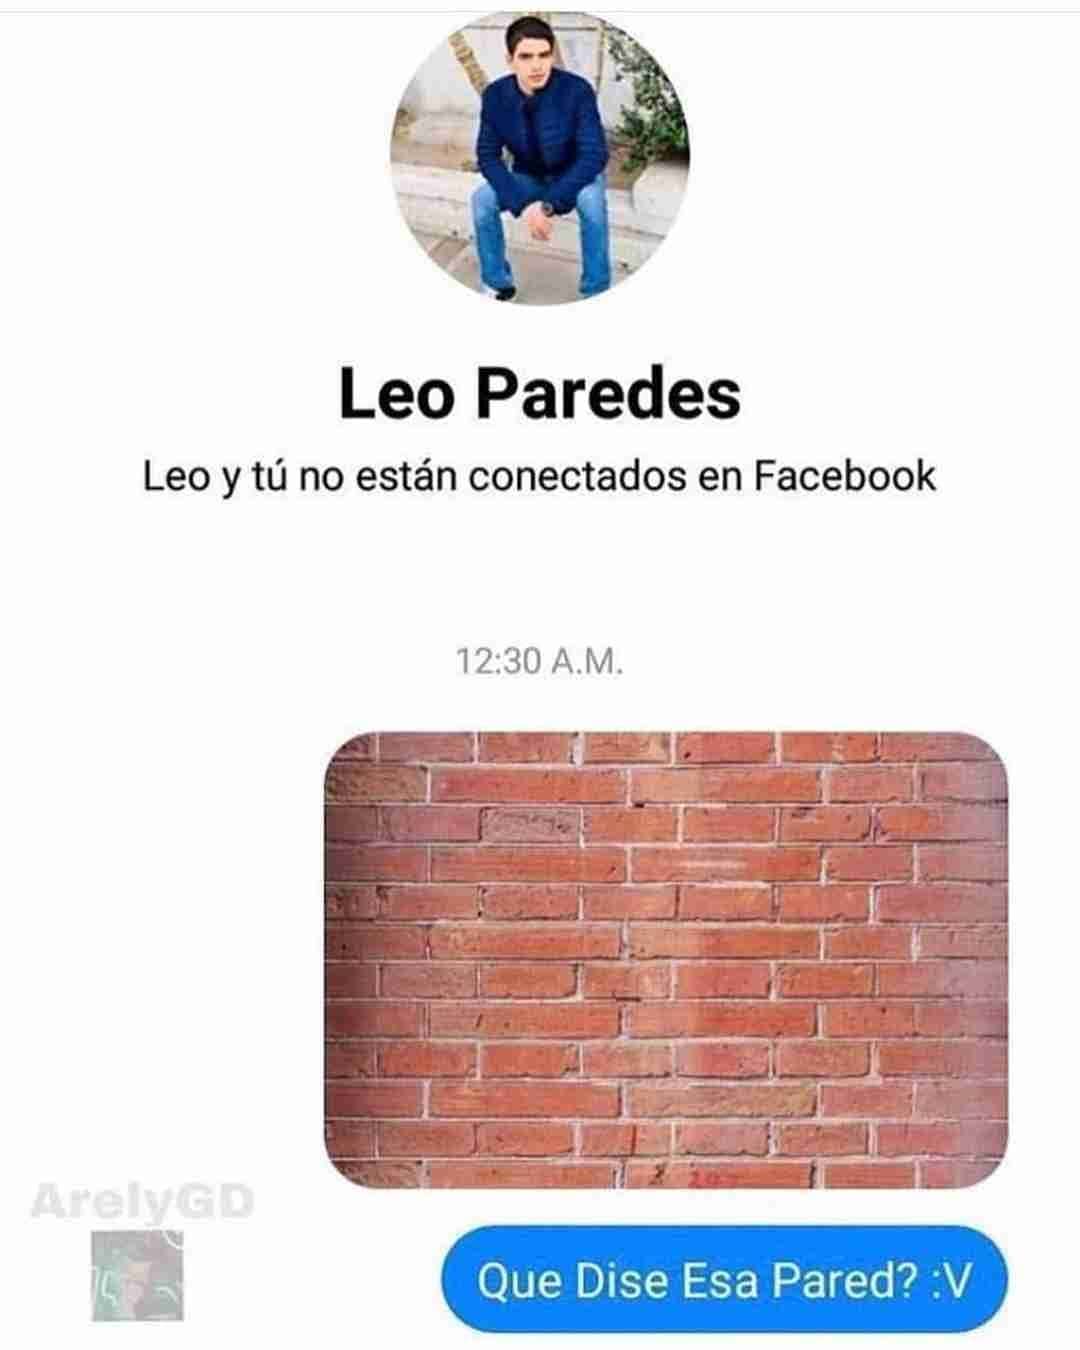 Leo Paredes. Leo y tú no están conectados en Facebook. Que dise esa pared?